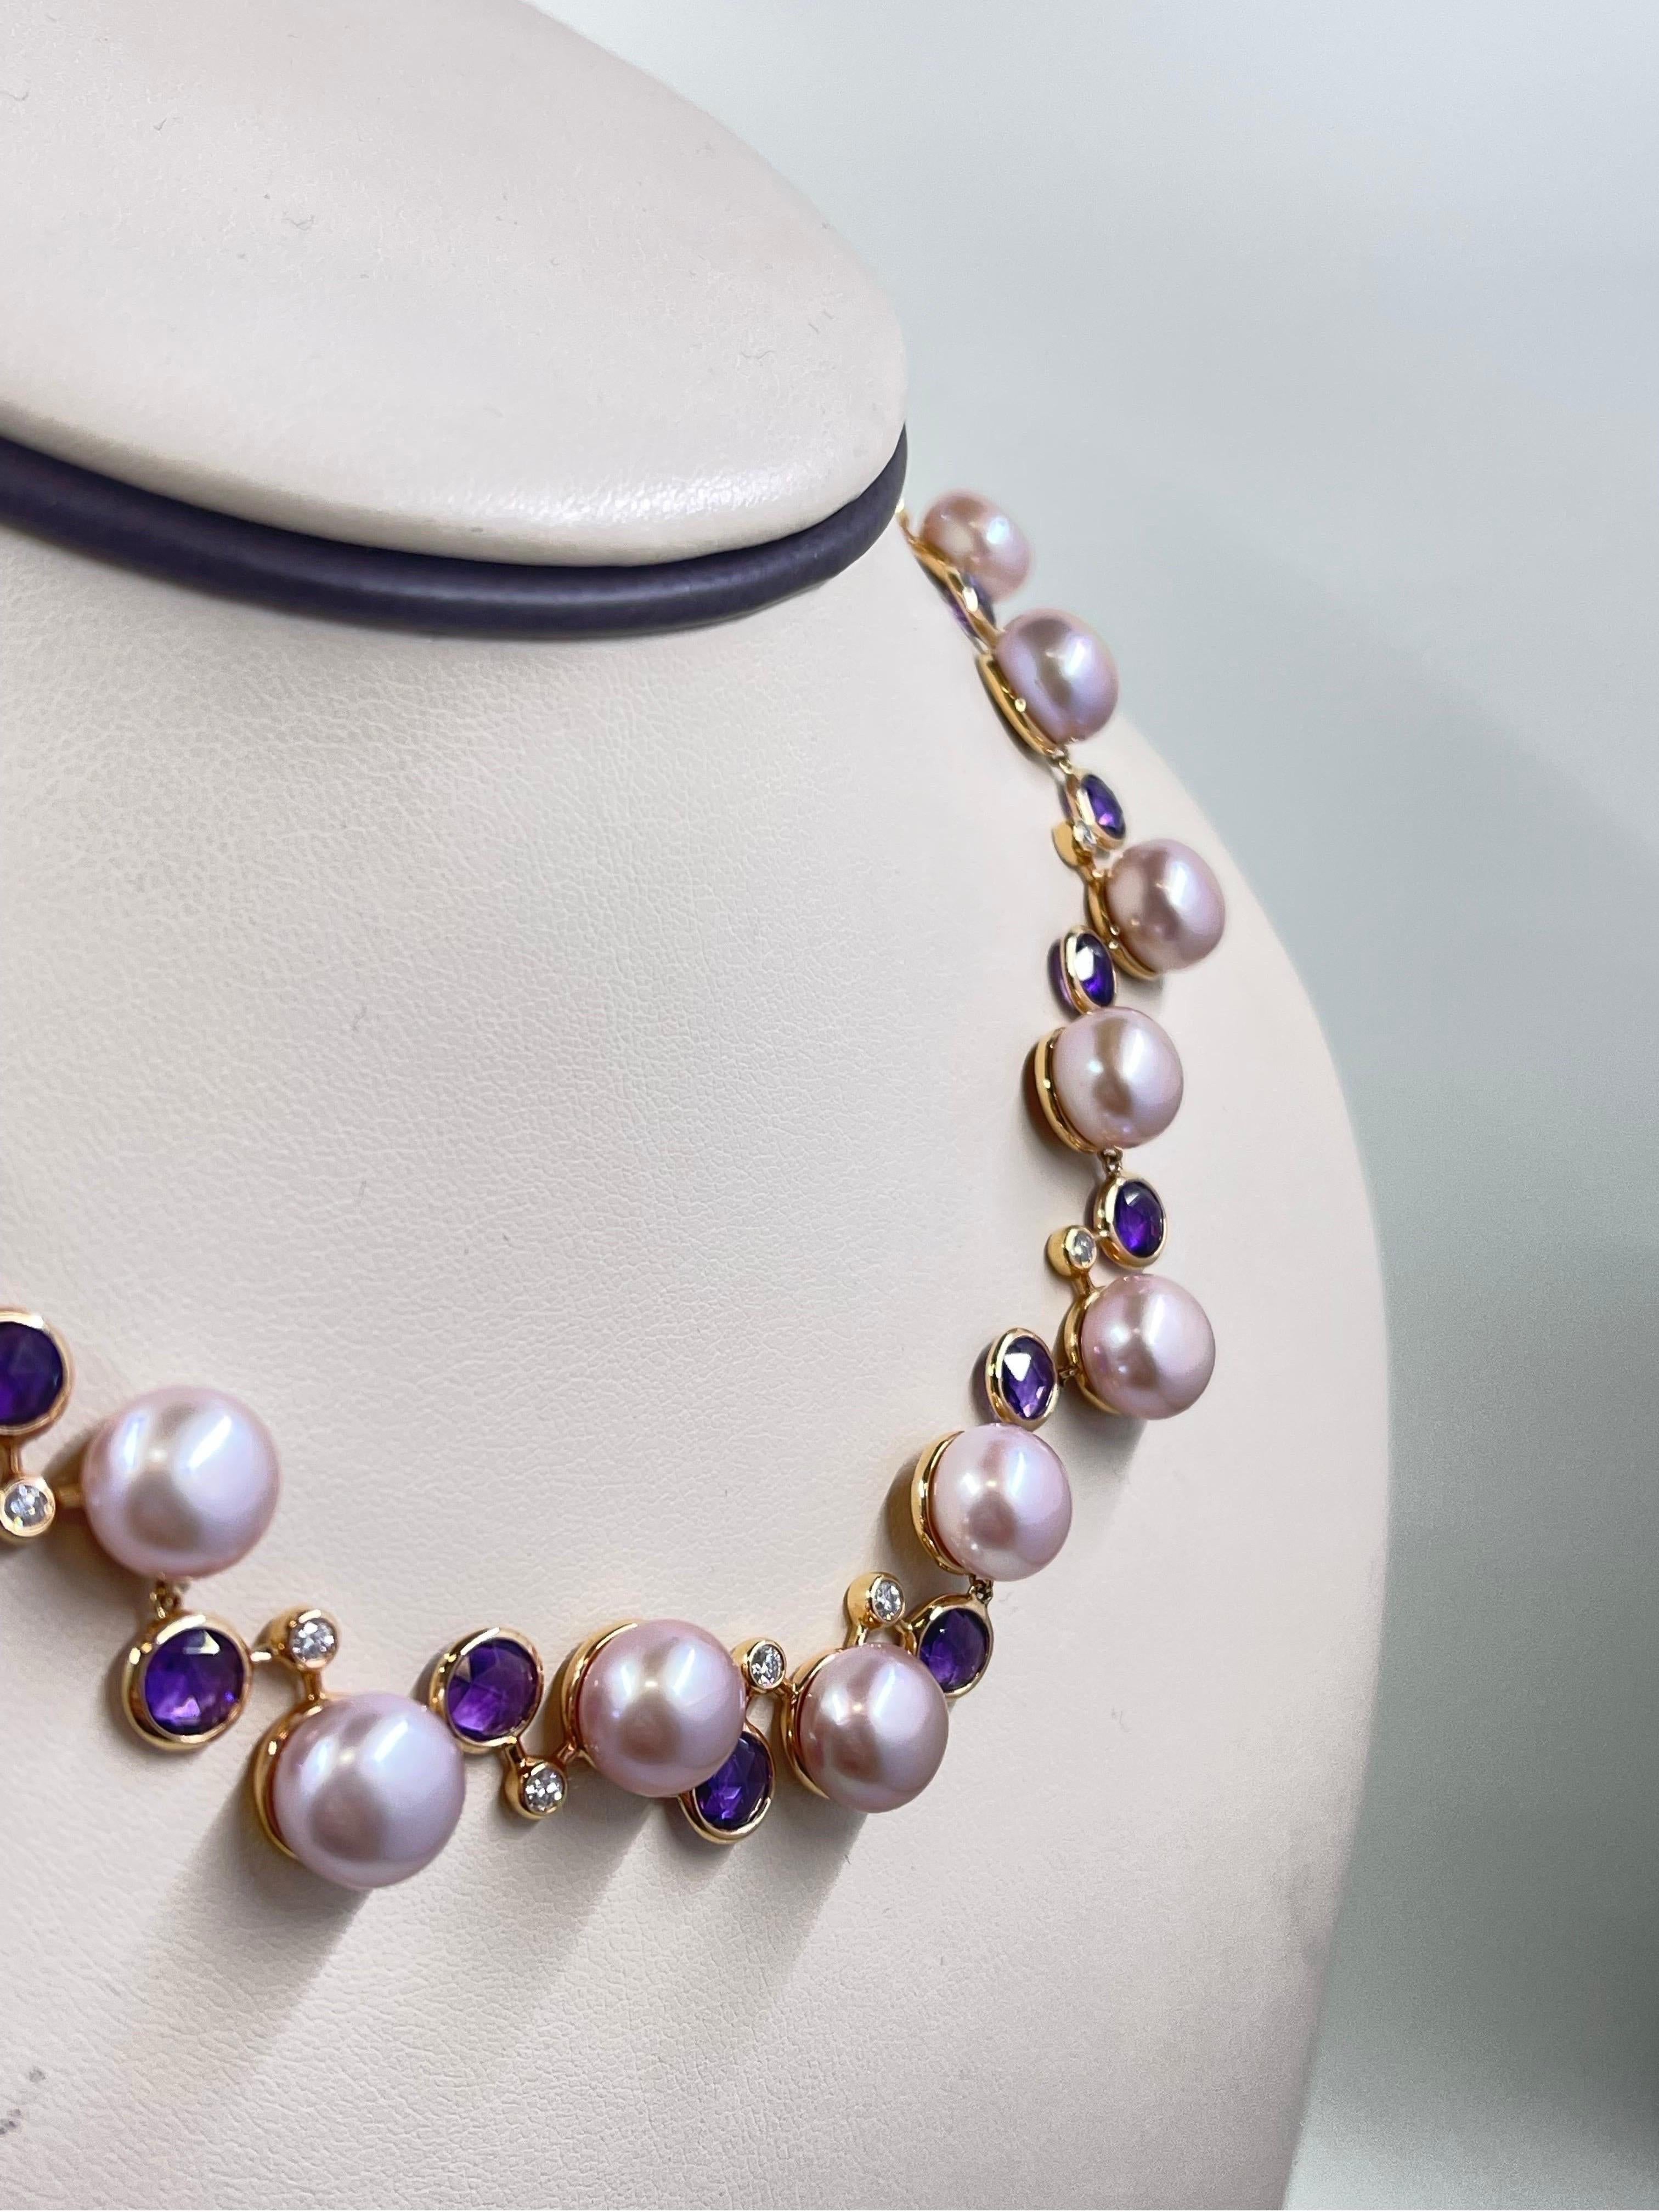 Superbe collier de perles roses, améthystes et diamants en or rose 18 carats.

La longueur est réglable, maximum 16